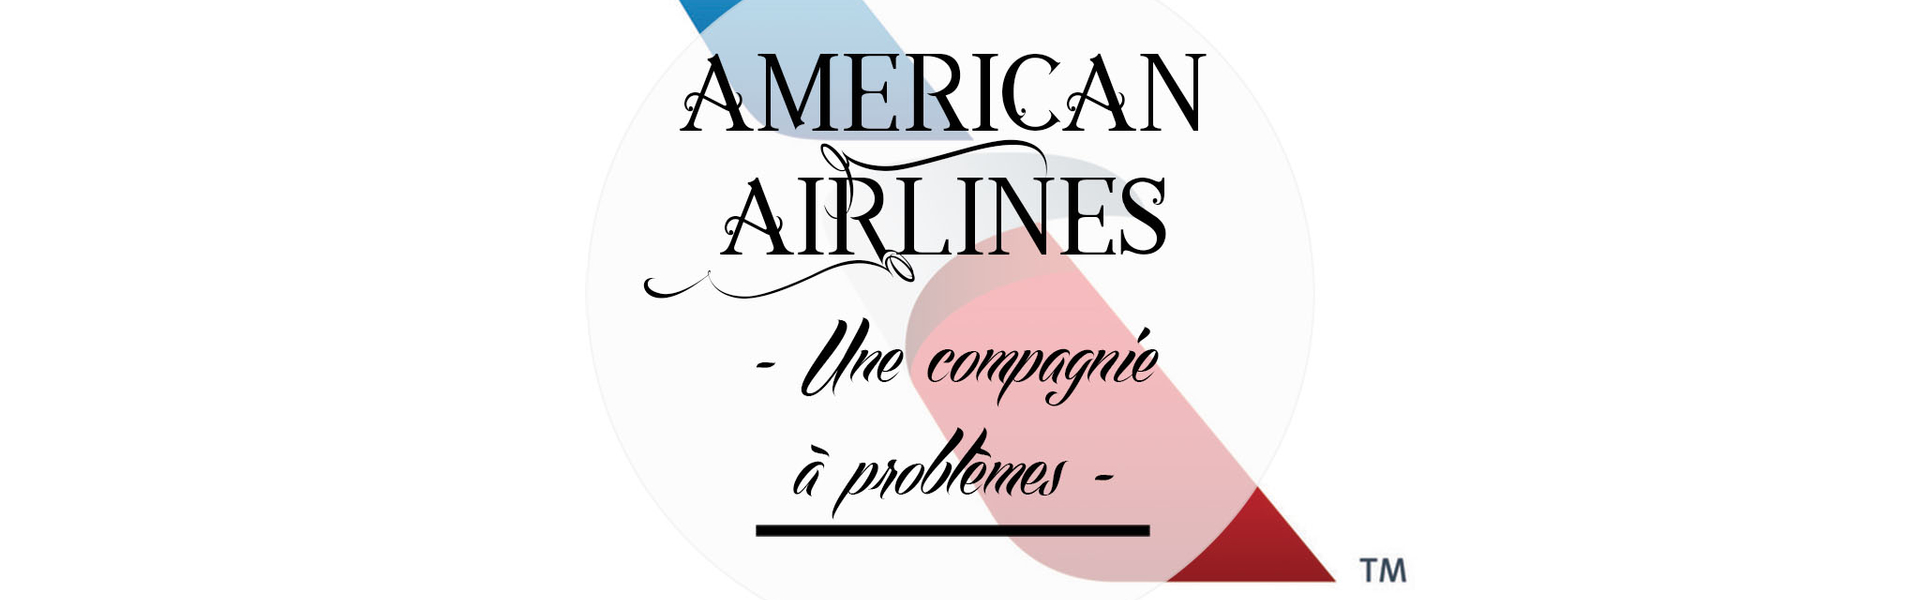 American Airlines, une compagnie à problèmes